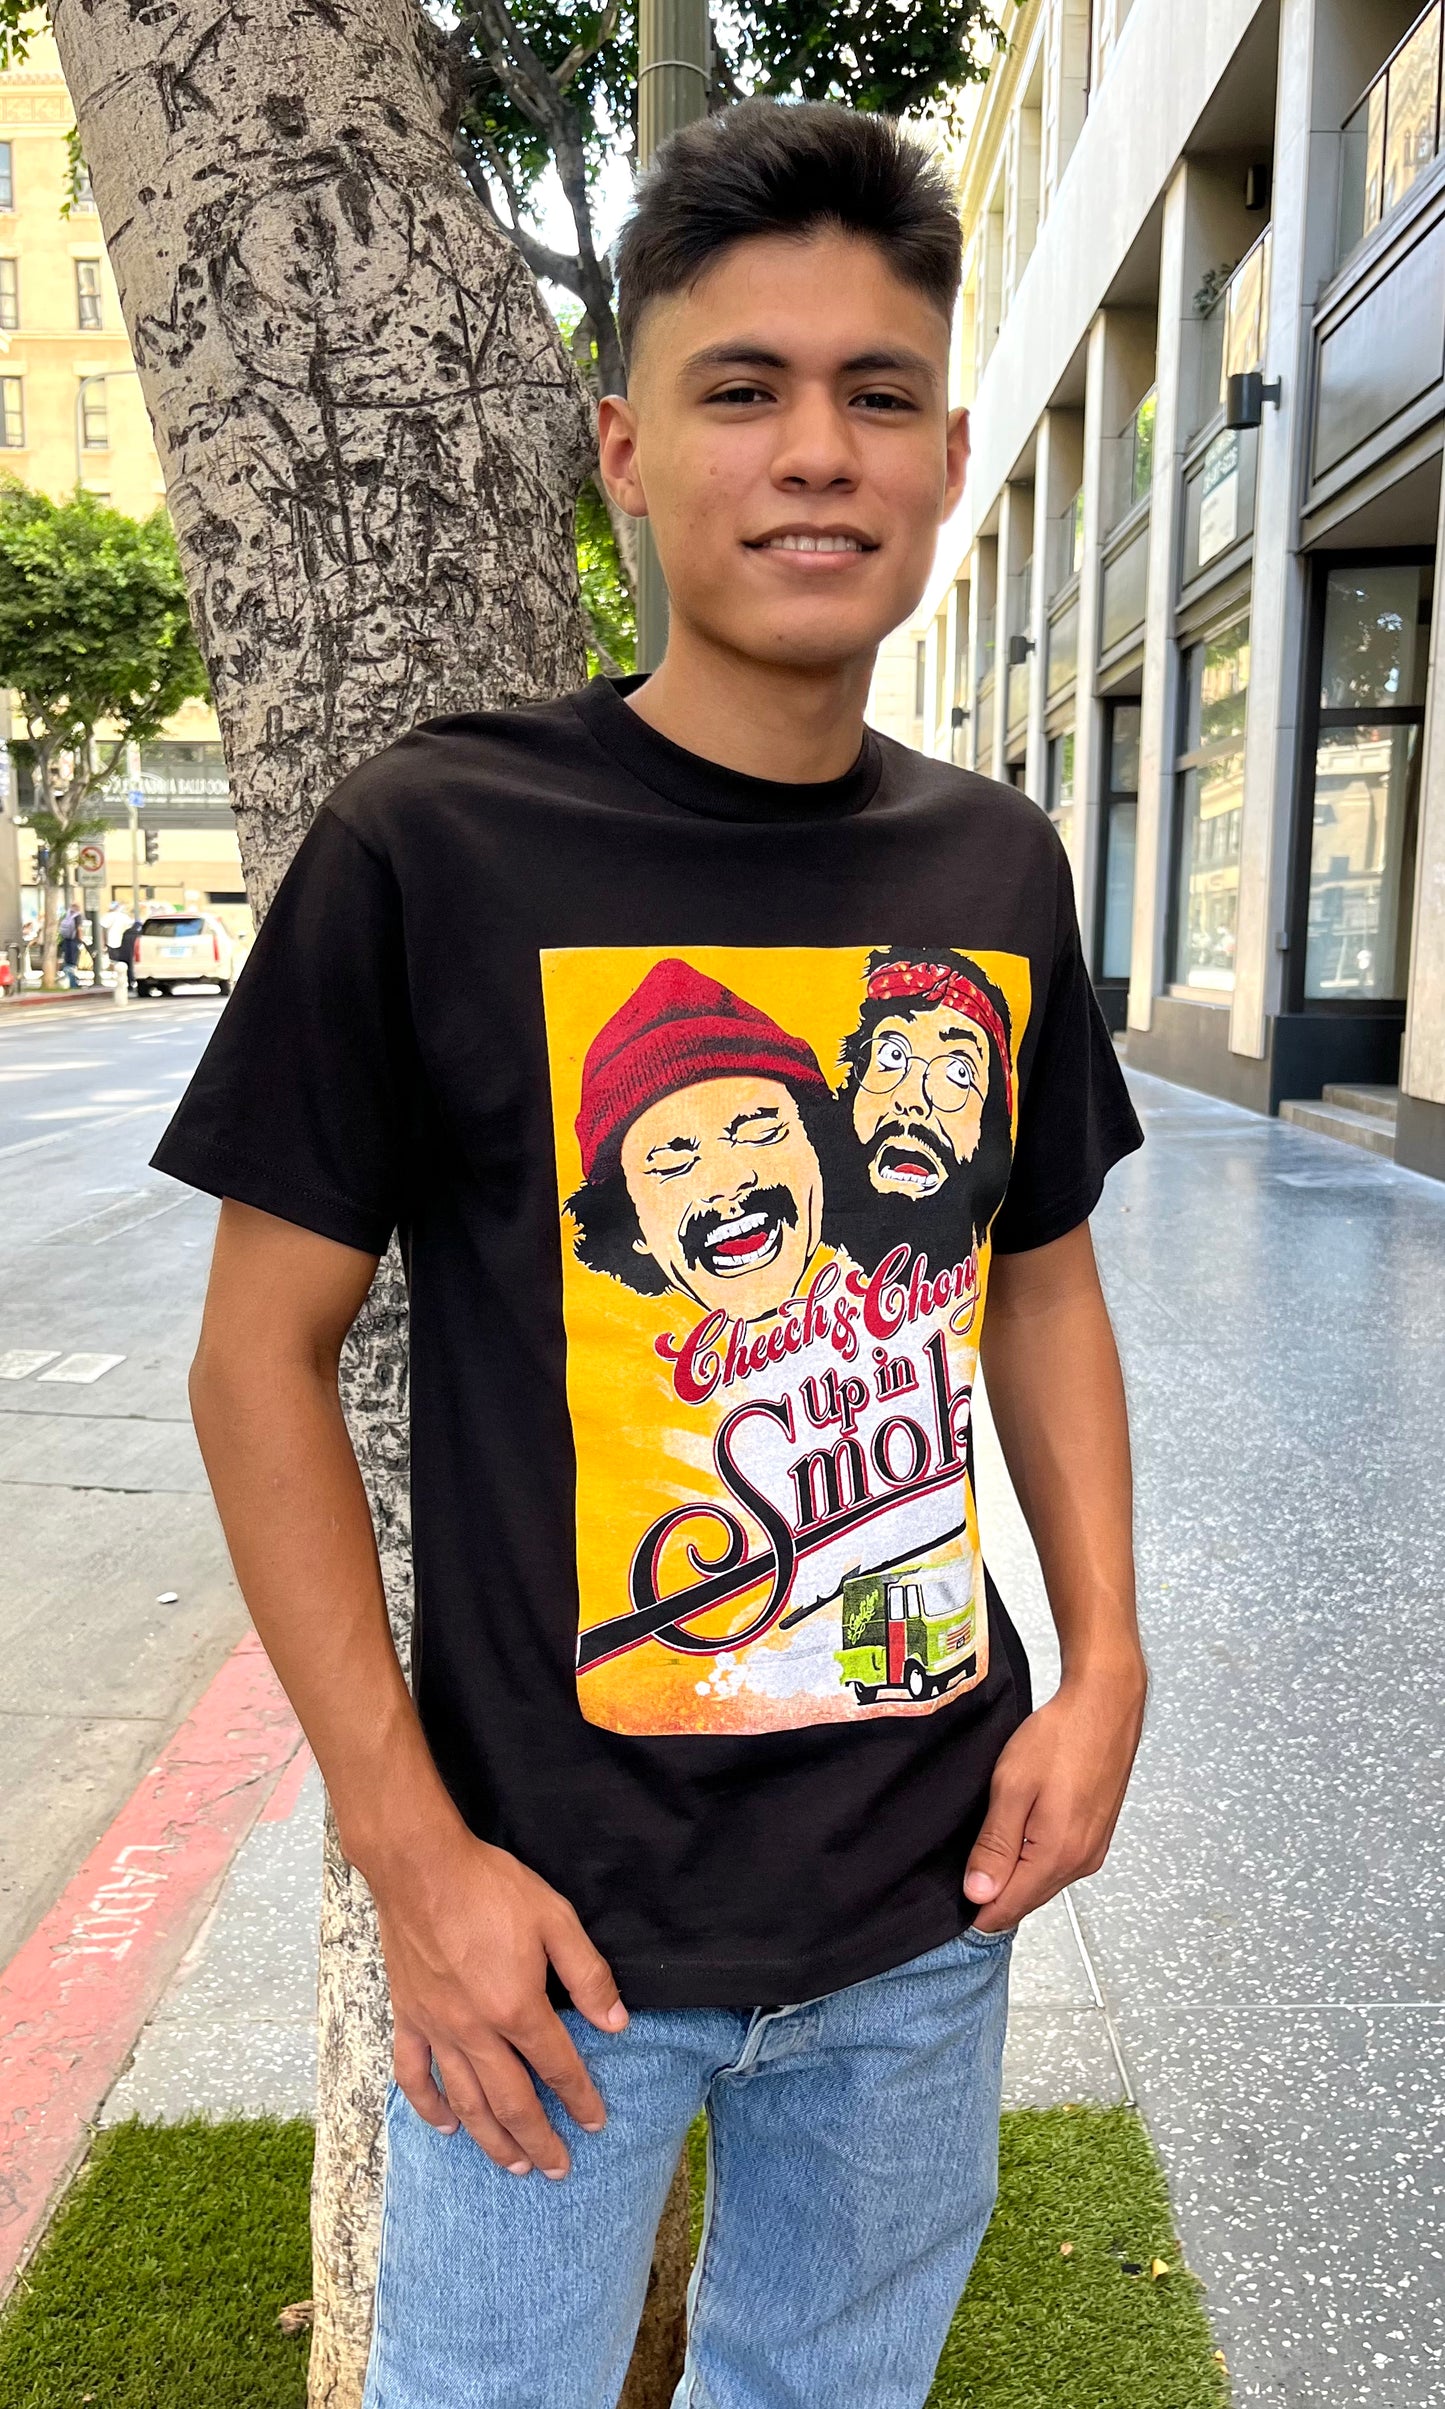 Cheech & Chong Up In Smoke Graphic T-shirt